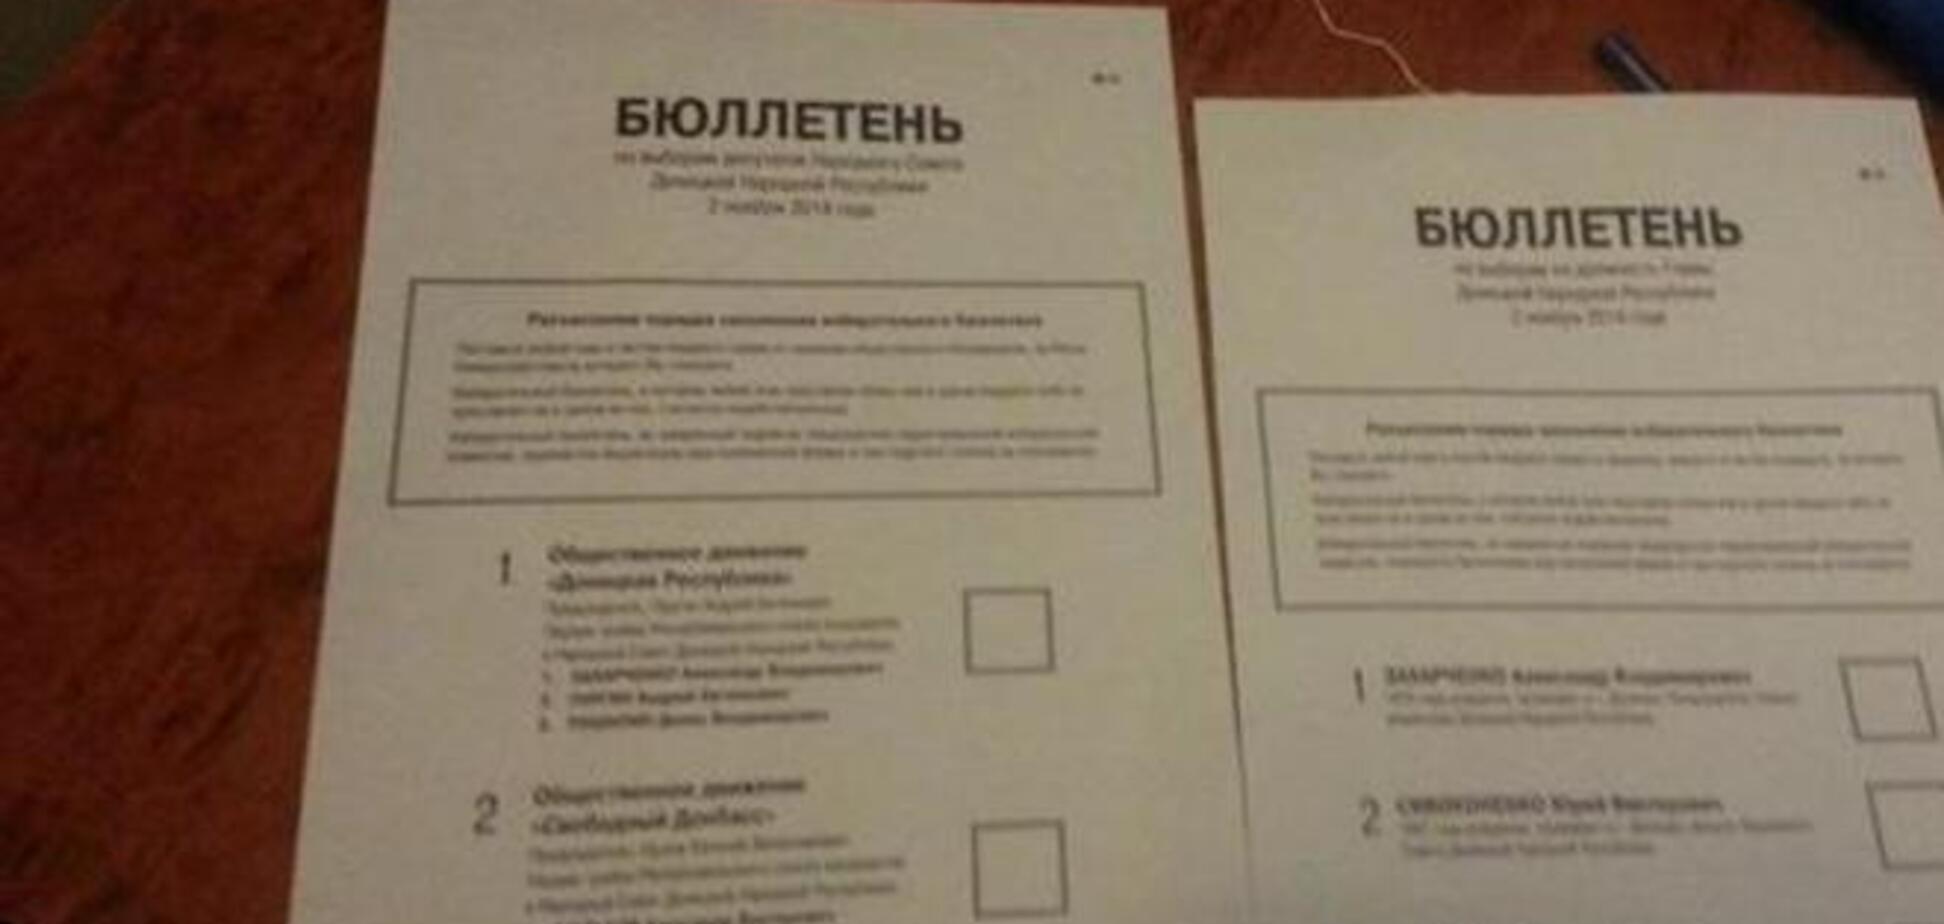 Появились фото с 'выборов' боевиков: раздача продуктов и 'бюллетени' на бумажках